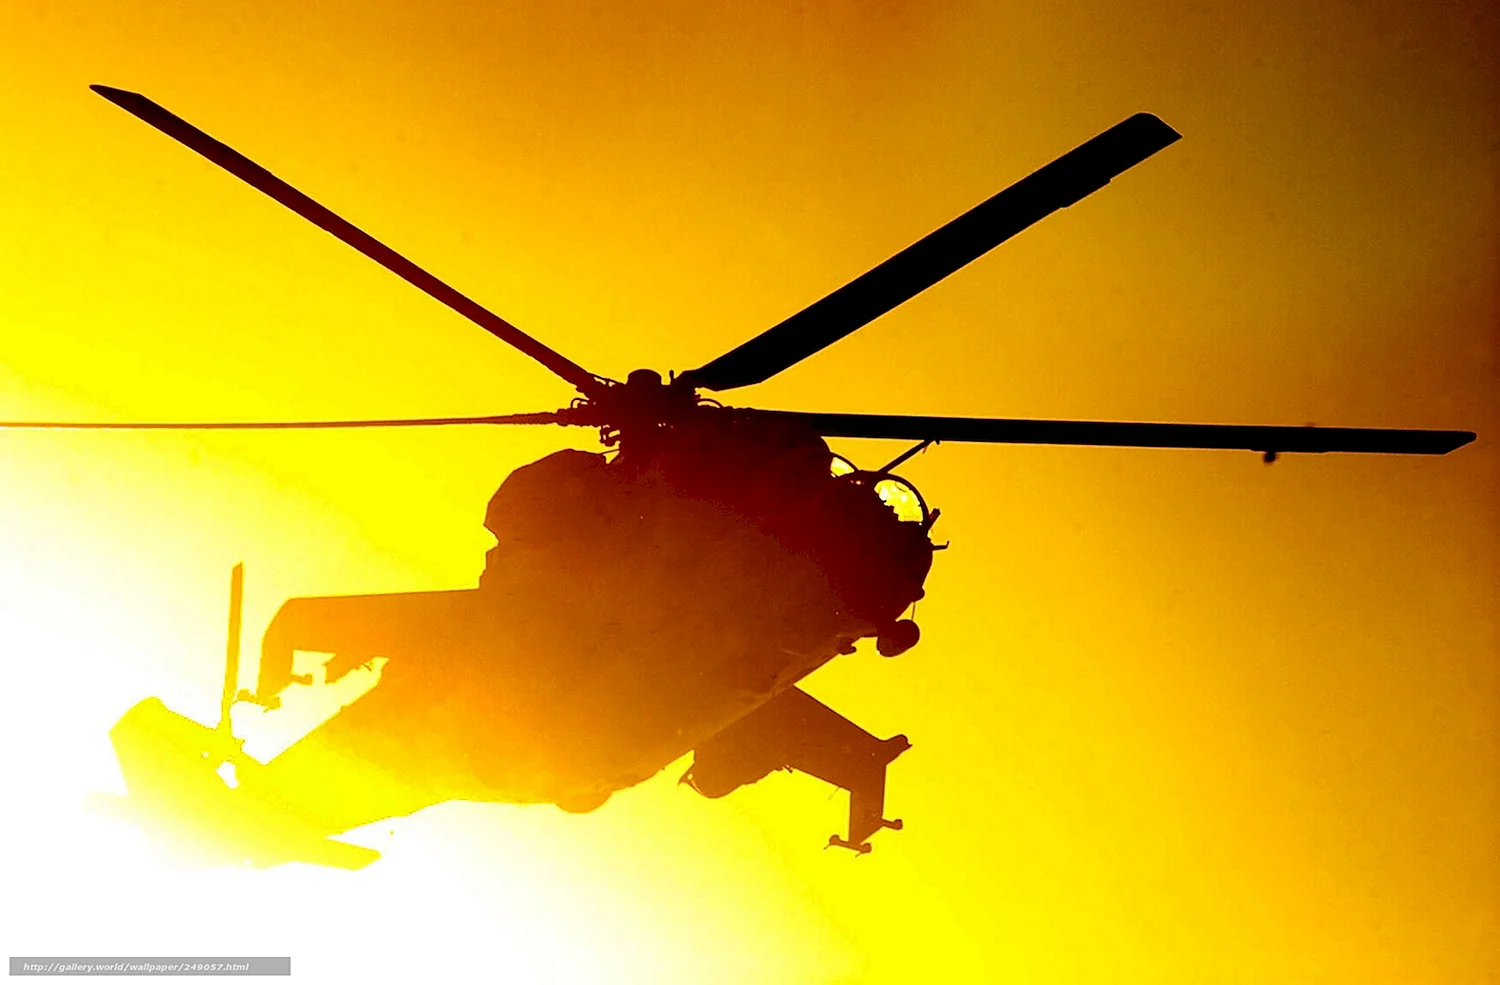 Вертолет на фоне солнца